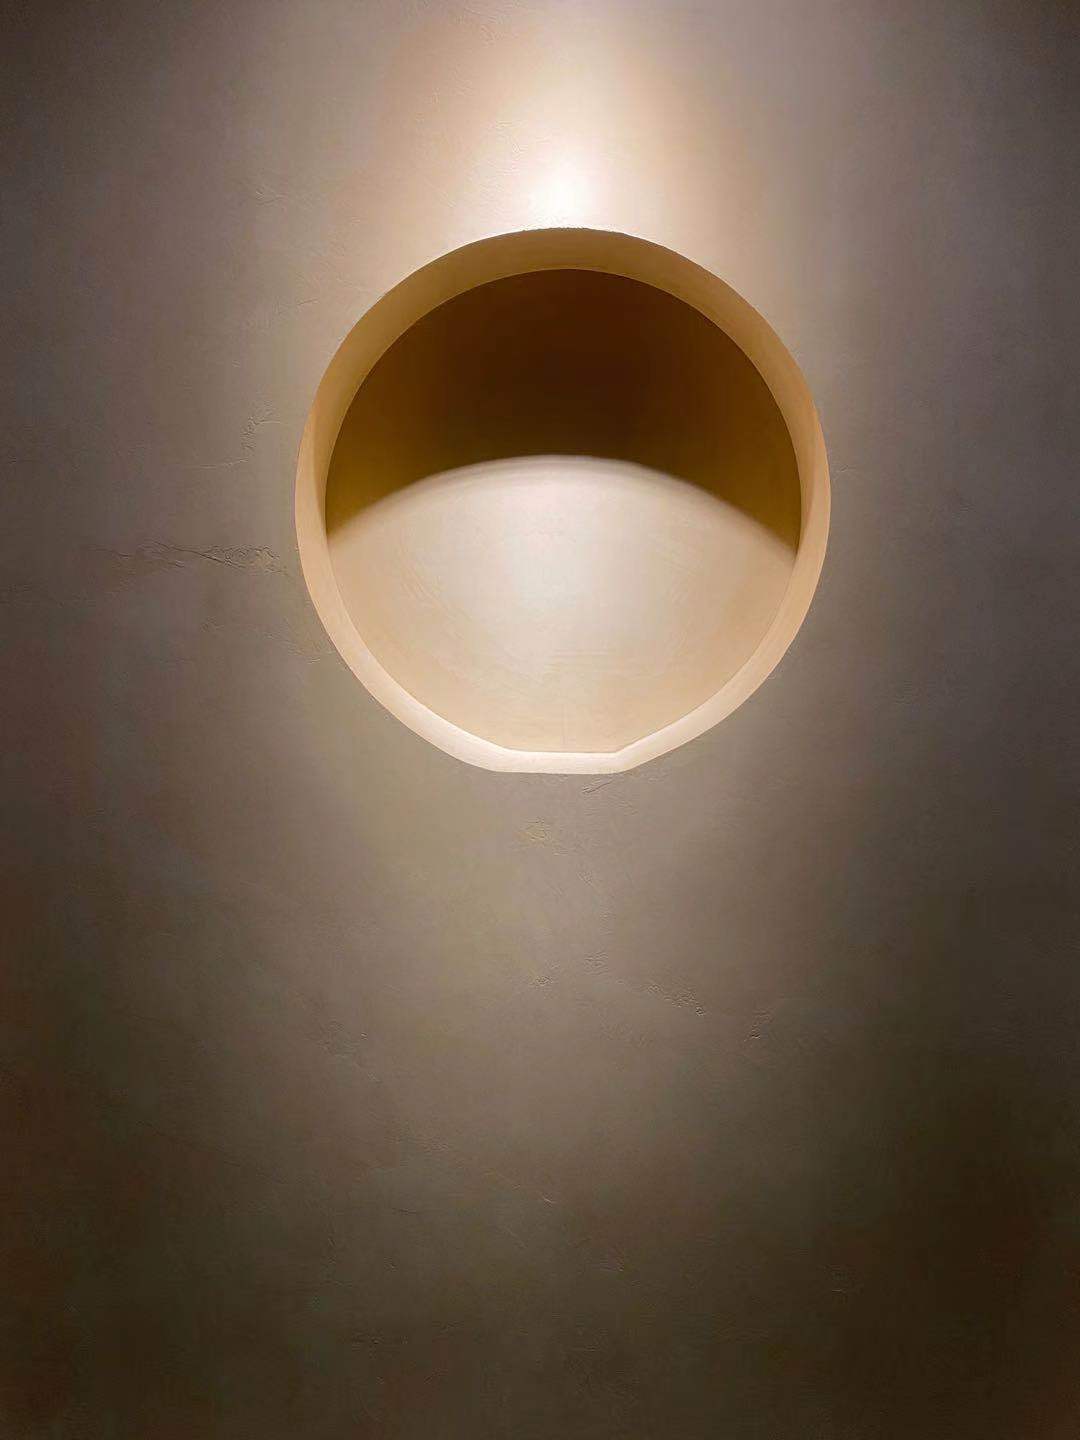 Mikrocement a falon egy minimalista stílusú otthonban, ahol a megvilágítás fokozza a burkolat hatását